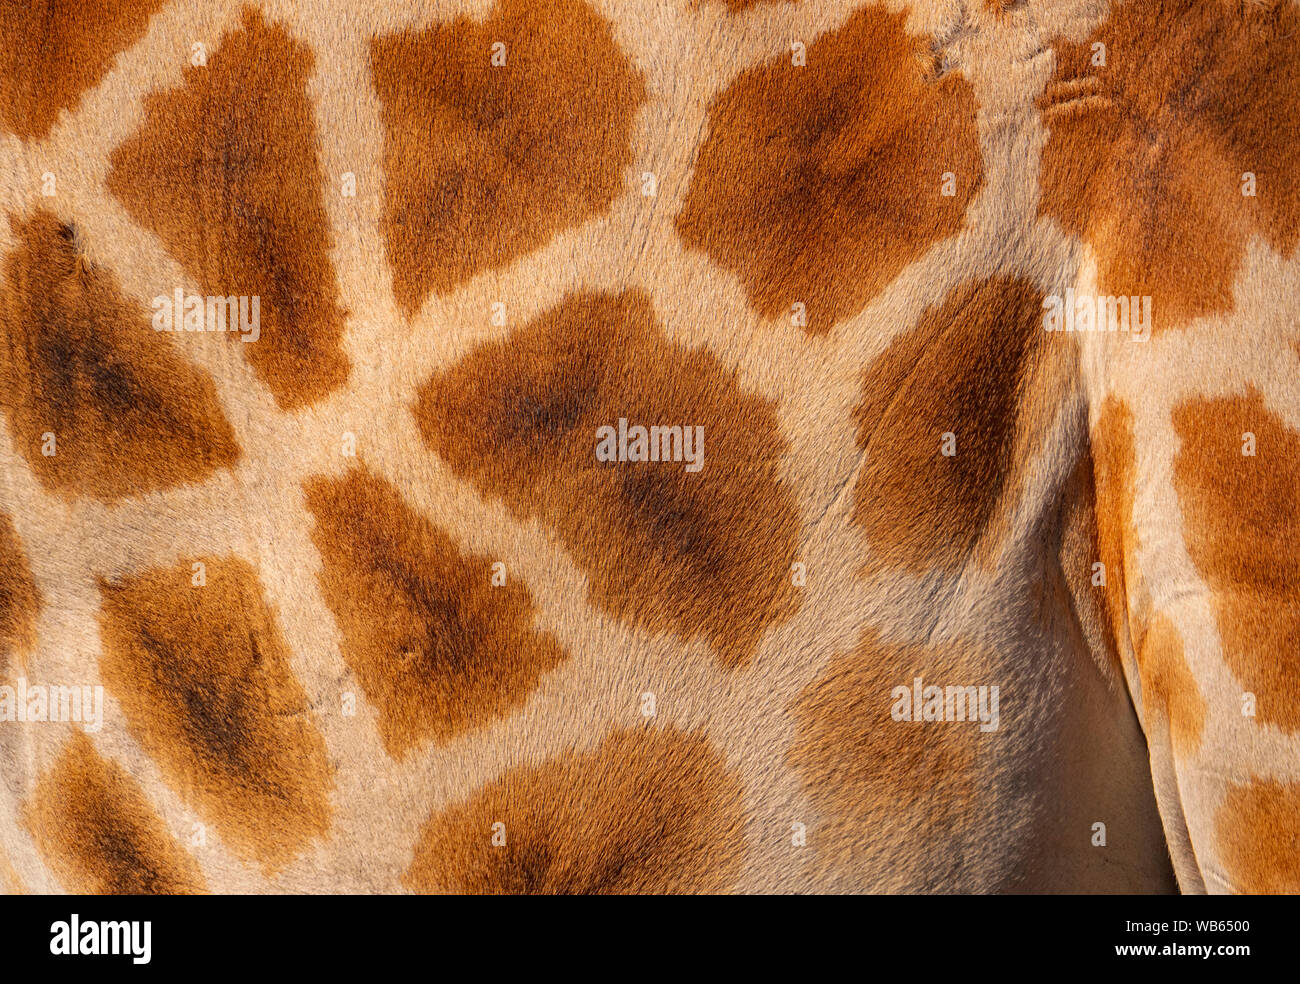 Girafe, Giraffa, peau hide background close up montrant spots, et la texture de cheveux y compris les taches et lignes blanches. Banque D'Images